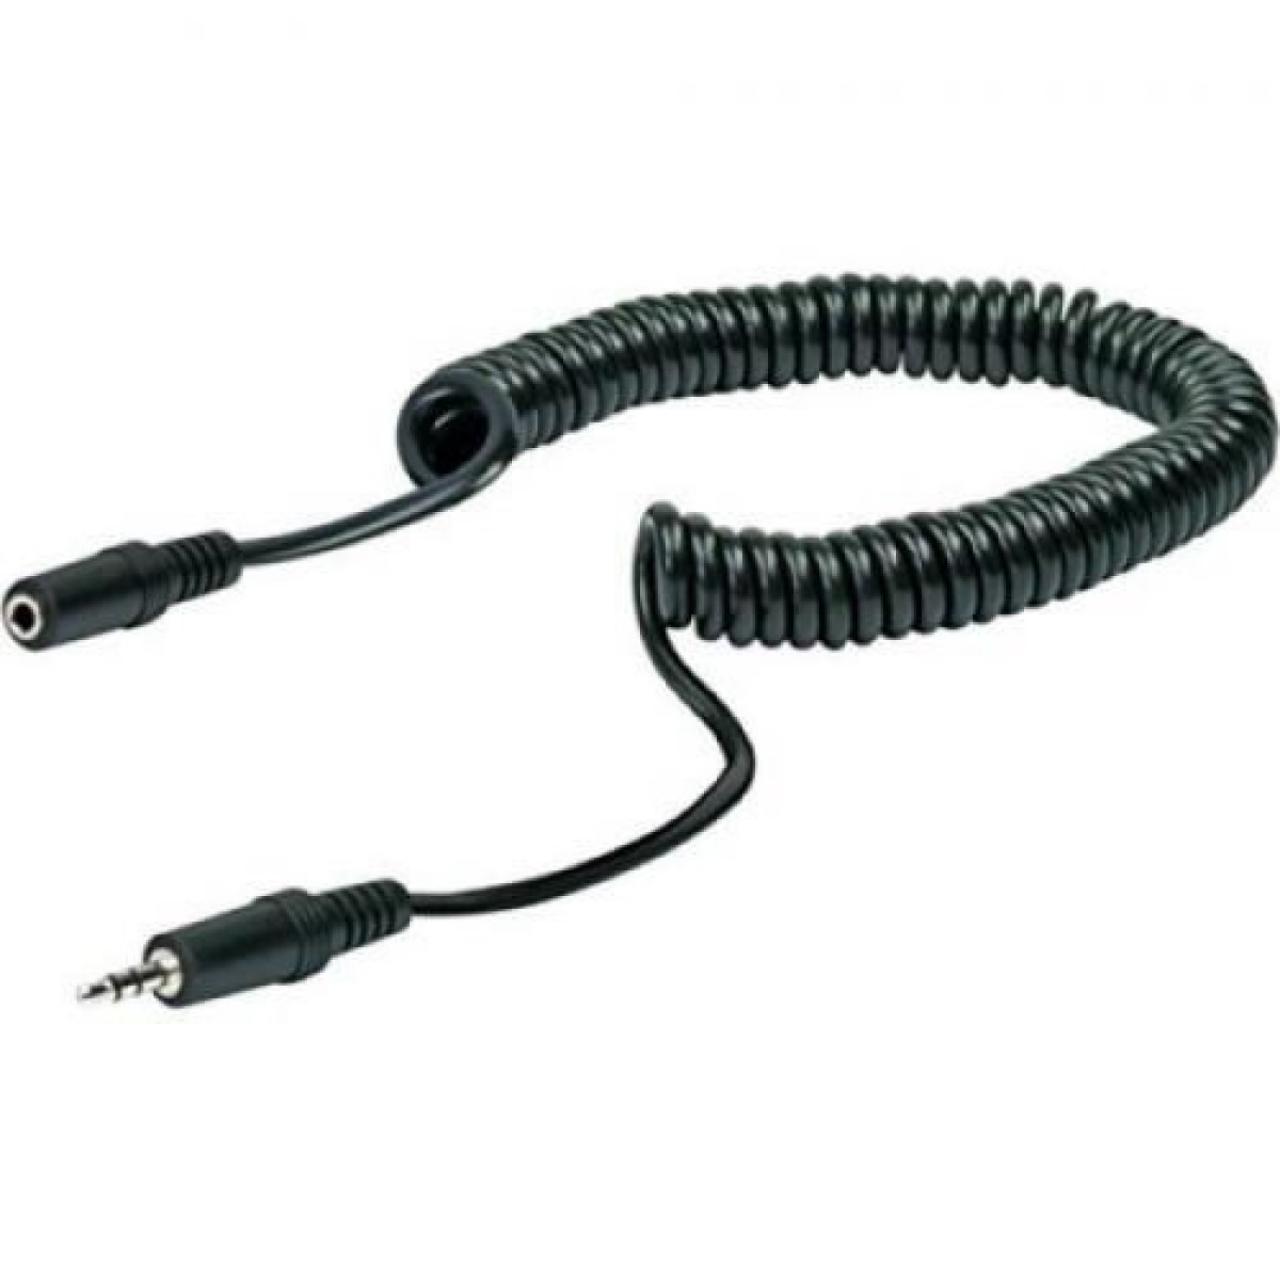 Kopfhörer Adapter Audio Spiralverlängerungskabel KHA4035 533 Schwaiger Neu OVP